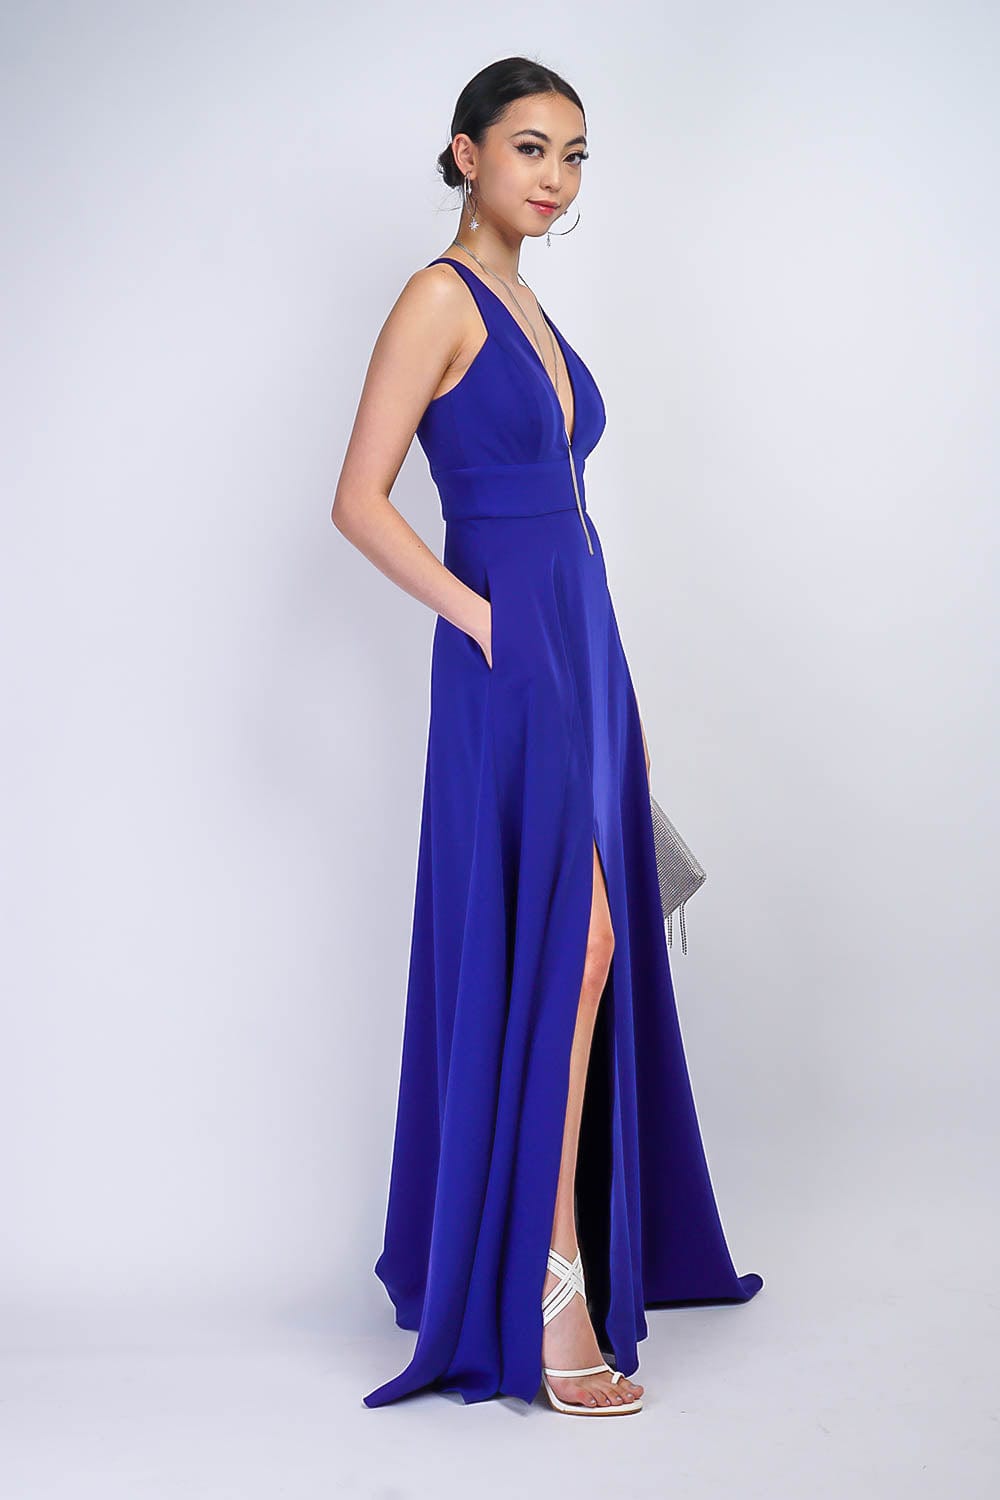 GOWNS Cobalt Blue V Neck Front Slit Soraya Gown - Chloe Dao